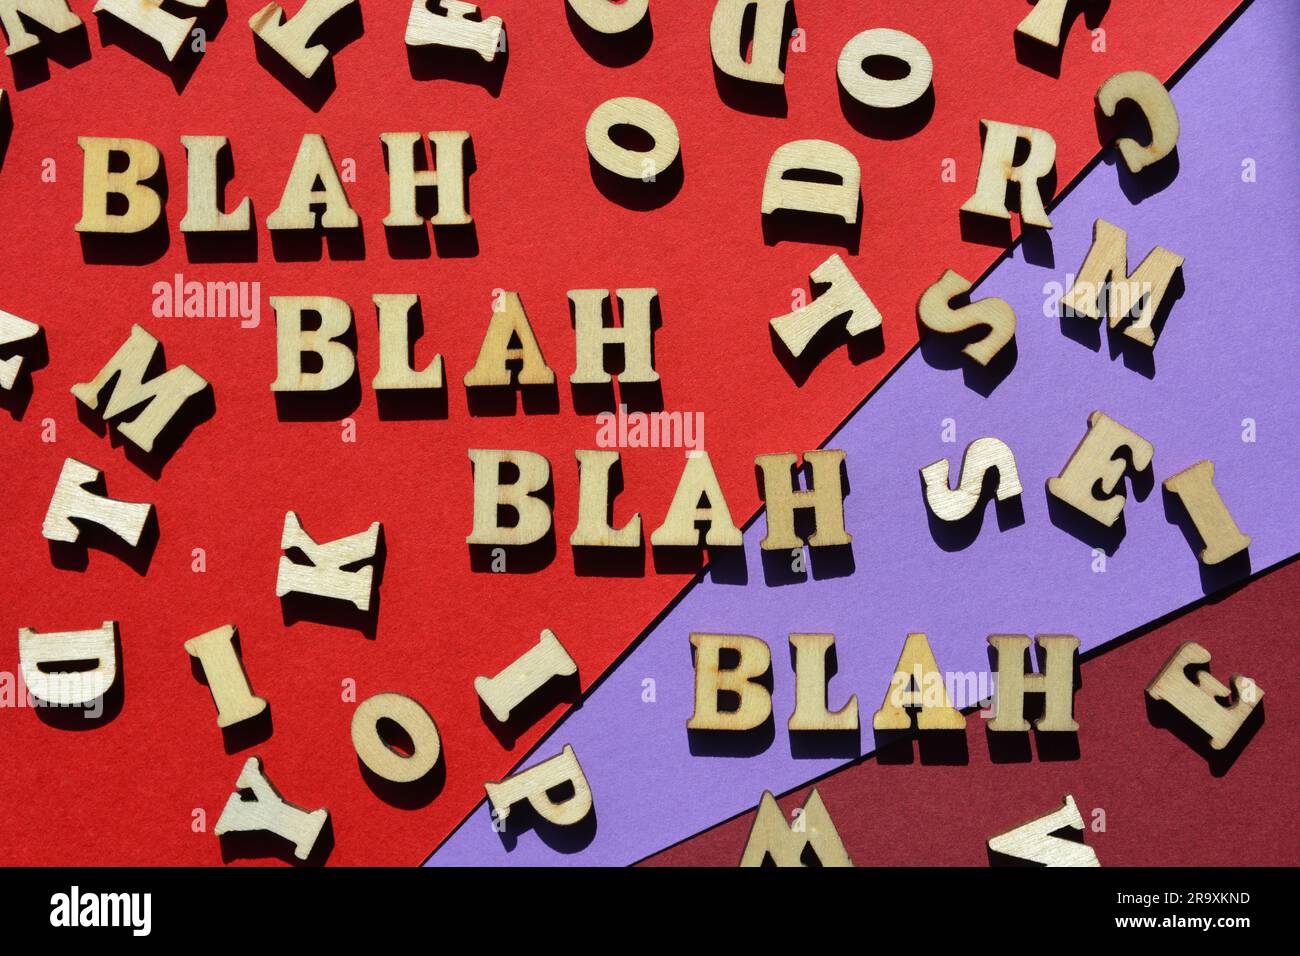 Bla, bla, bla, bla, Wörter in hölzernen Buchstaben, umgeben von zufälligen Buchstaben Stockfoto